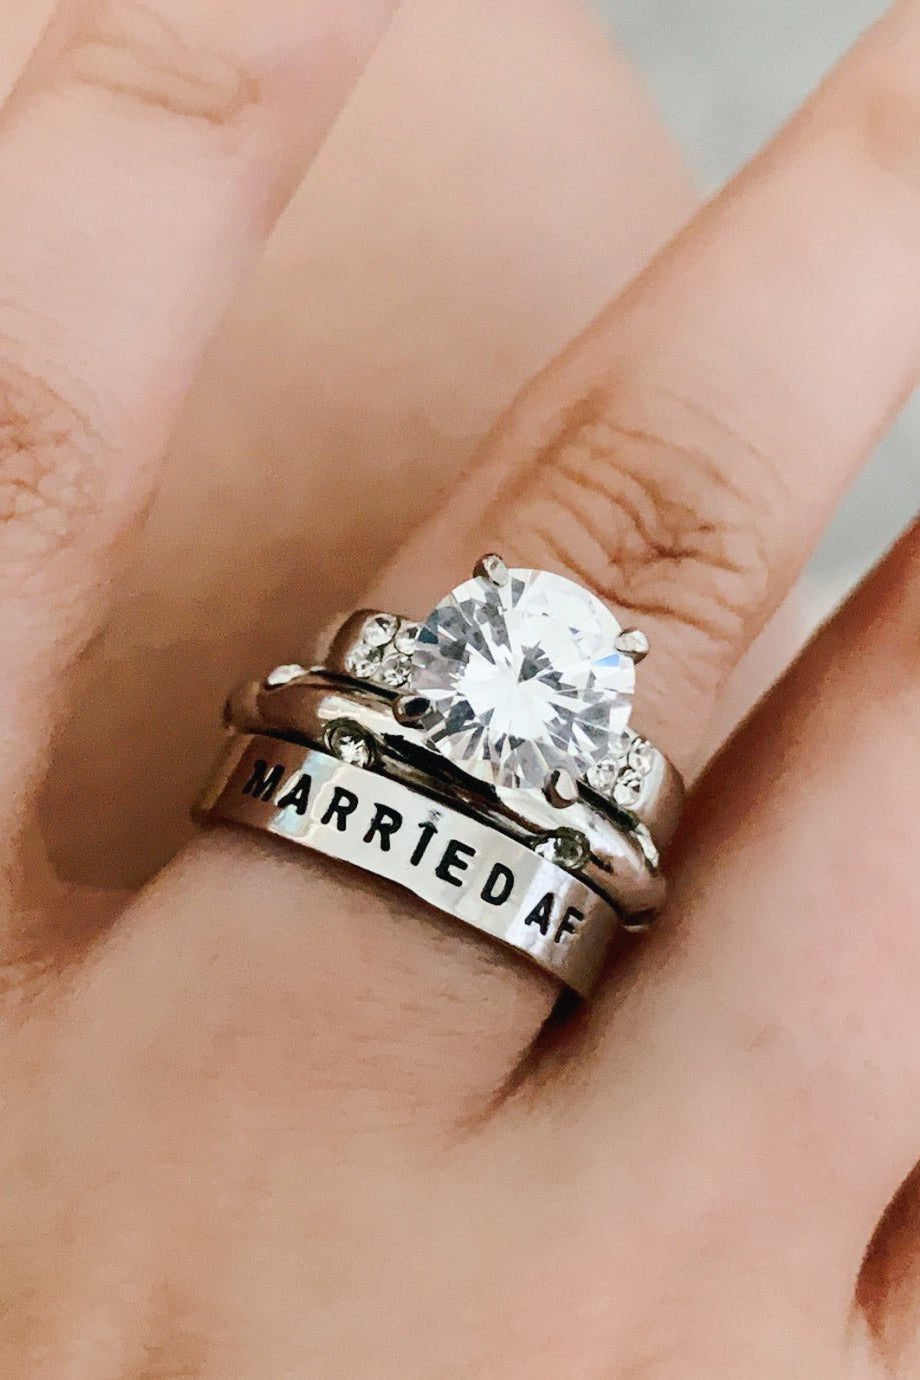 Married AF Ring - UntamedEgo LLC.